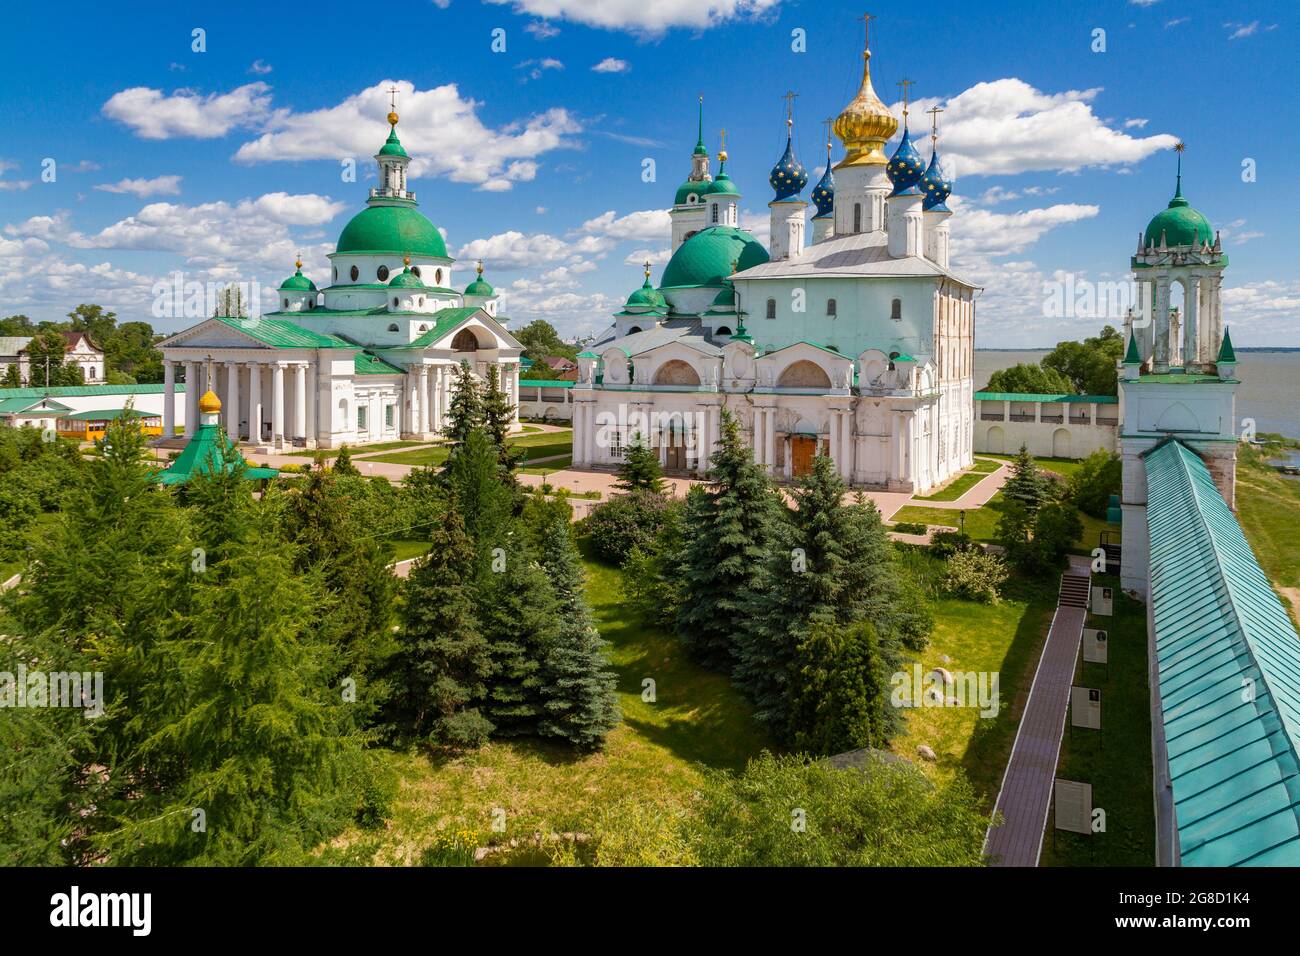 Spaso-Yakovlevsky monastery in Rostov the Great, Russia. Stock Photo